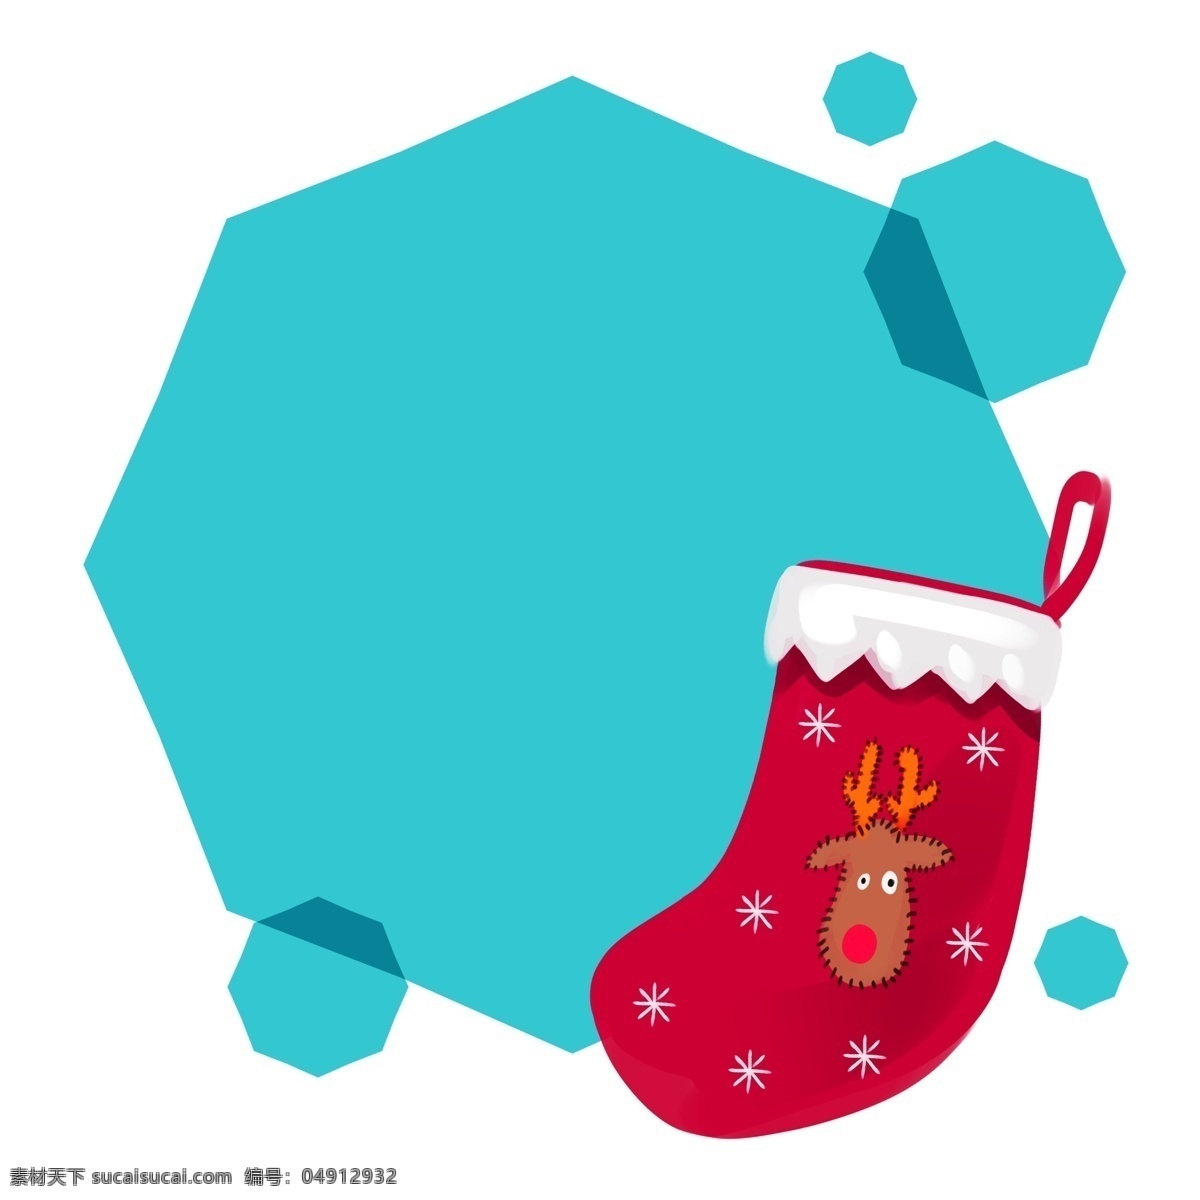 手绘 圣诞 袜子 边框 圣诞边框 蓝色 蓝色边框 几何图形边框 多边形边框 红儿袜子 红色圣诞袜